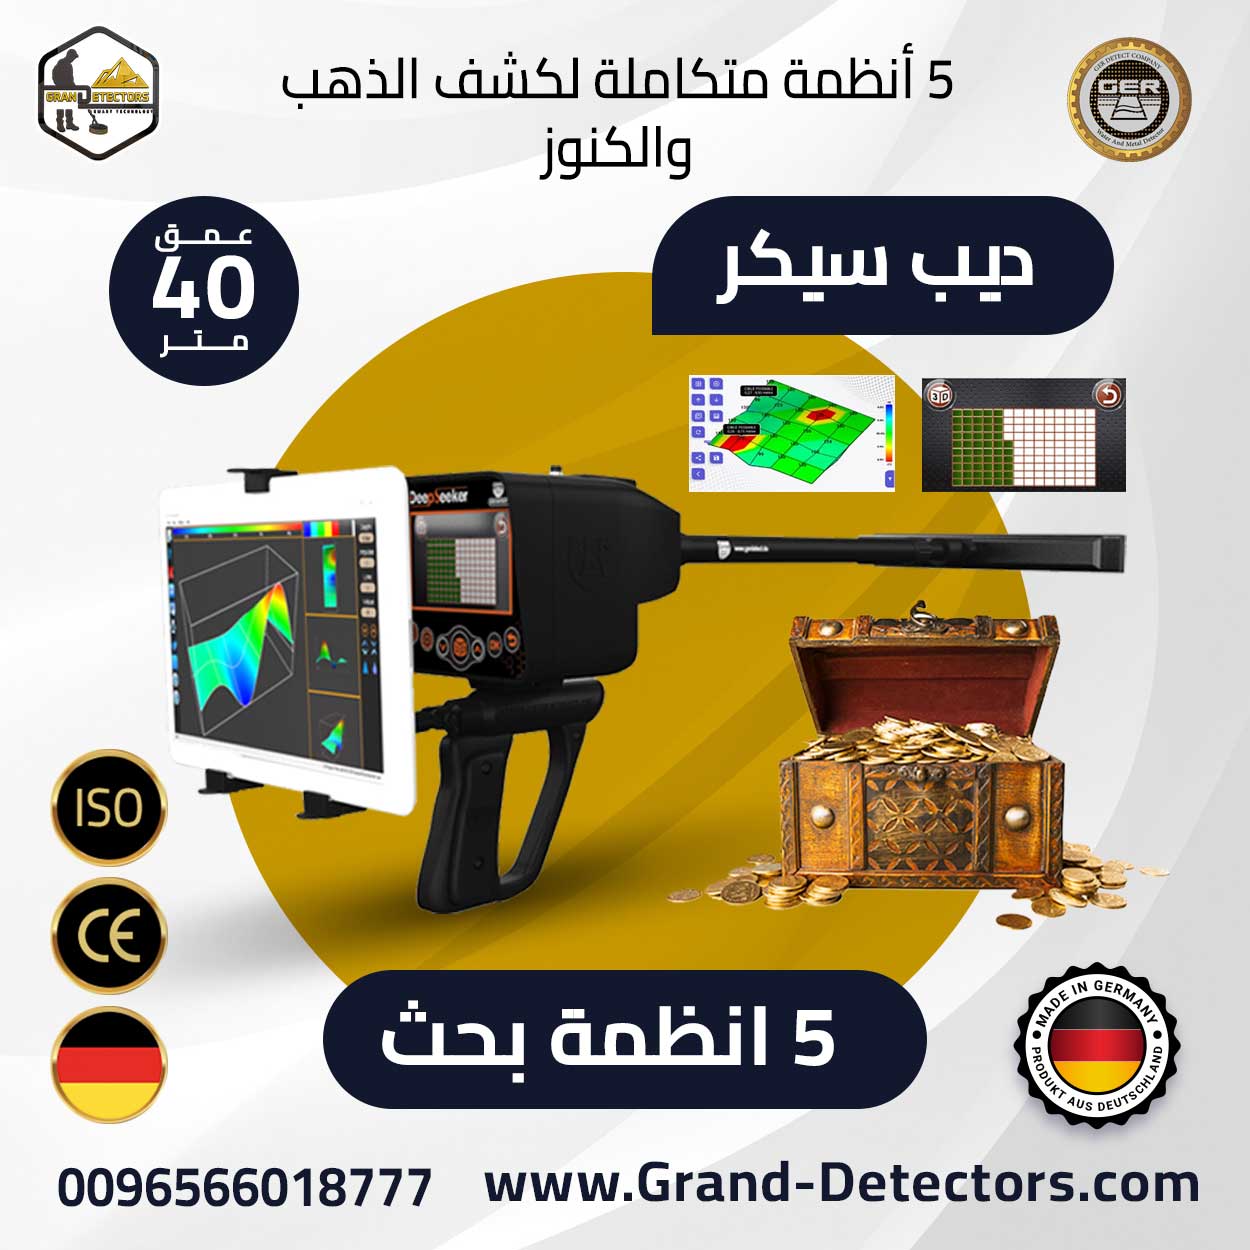 grand detectors1